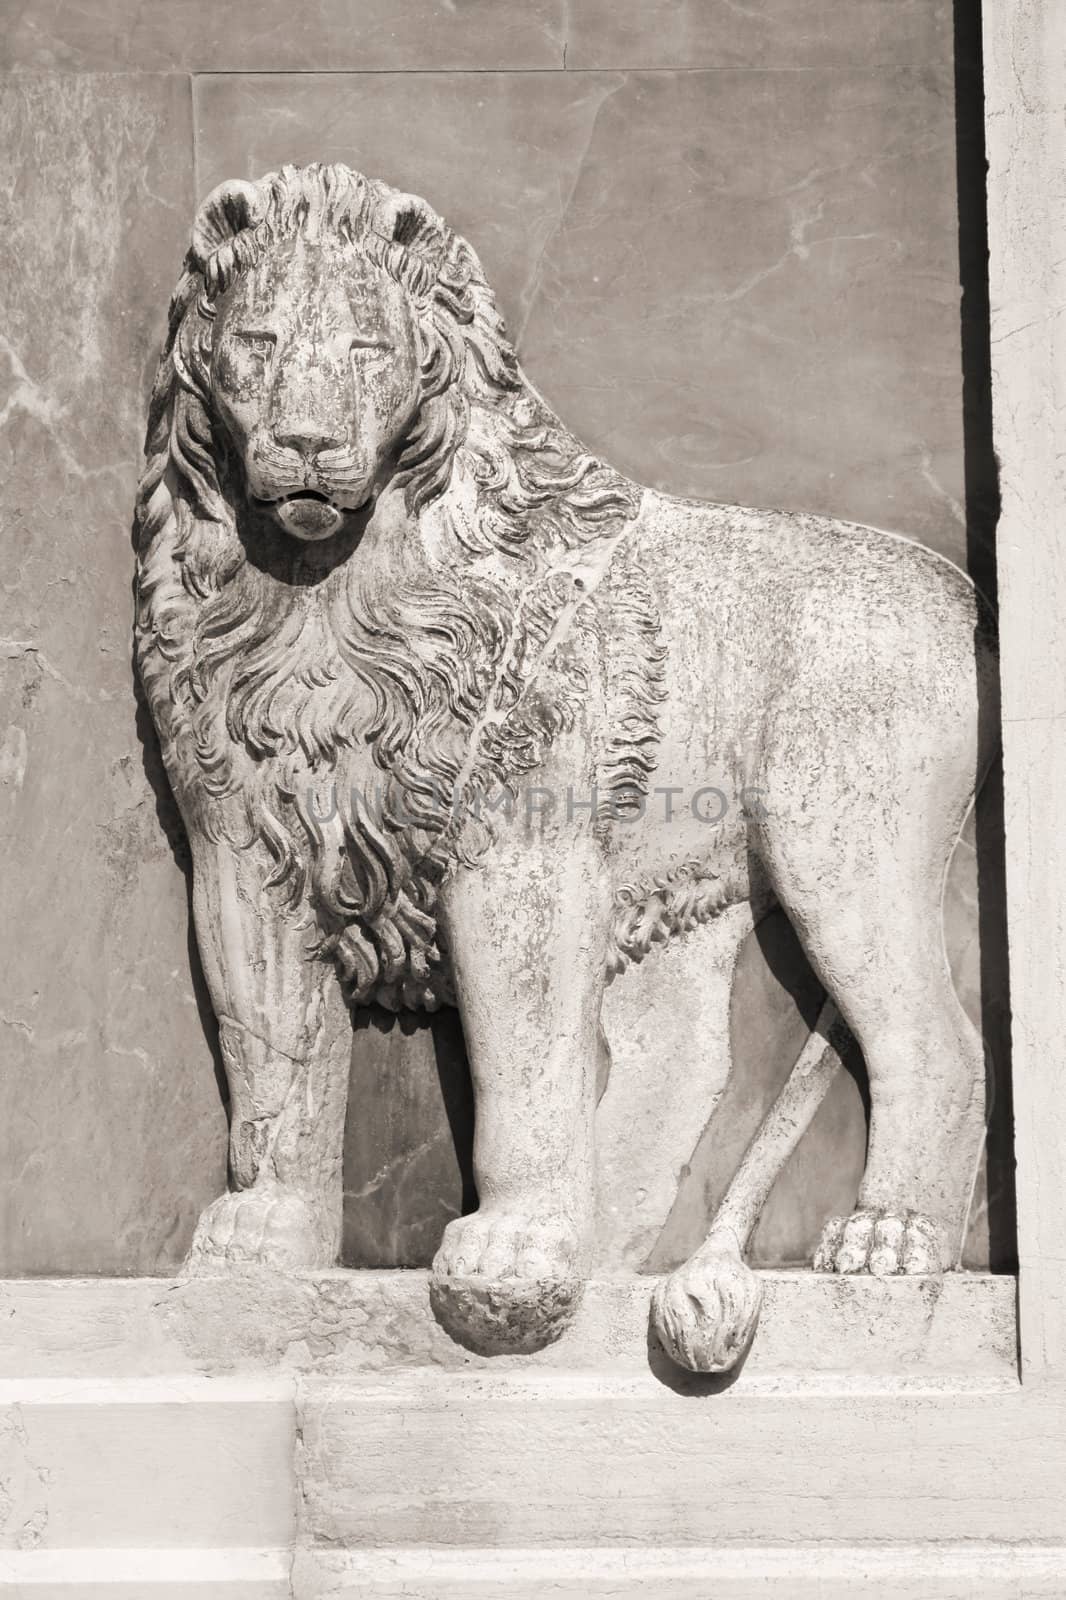 Lion in Venice by tupungato